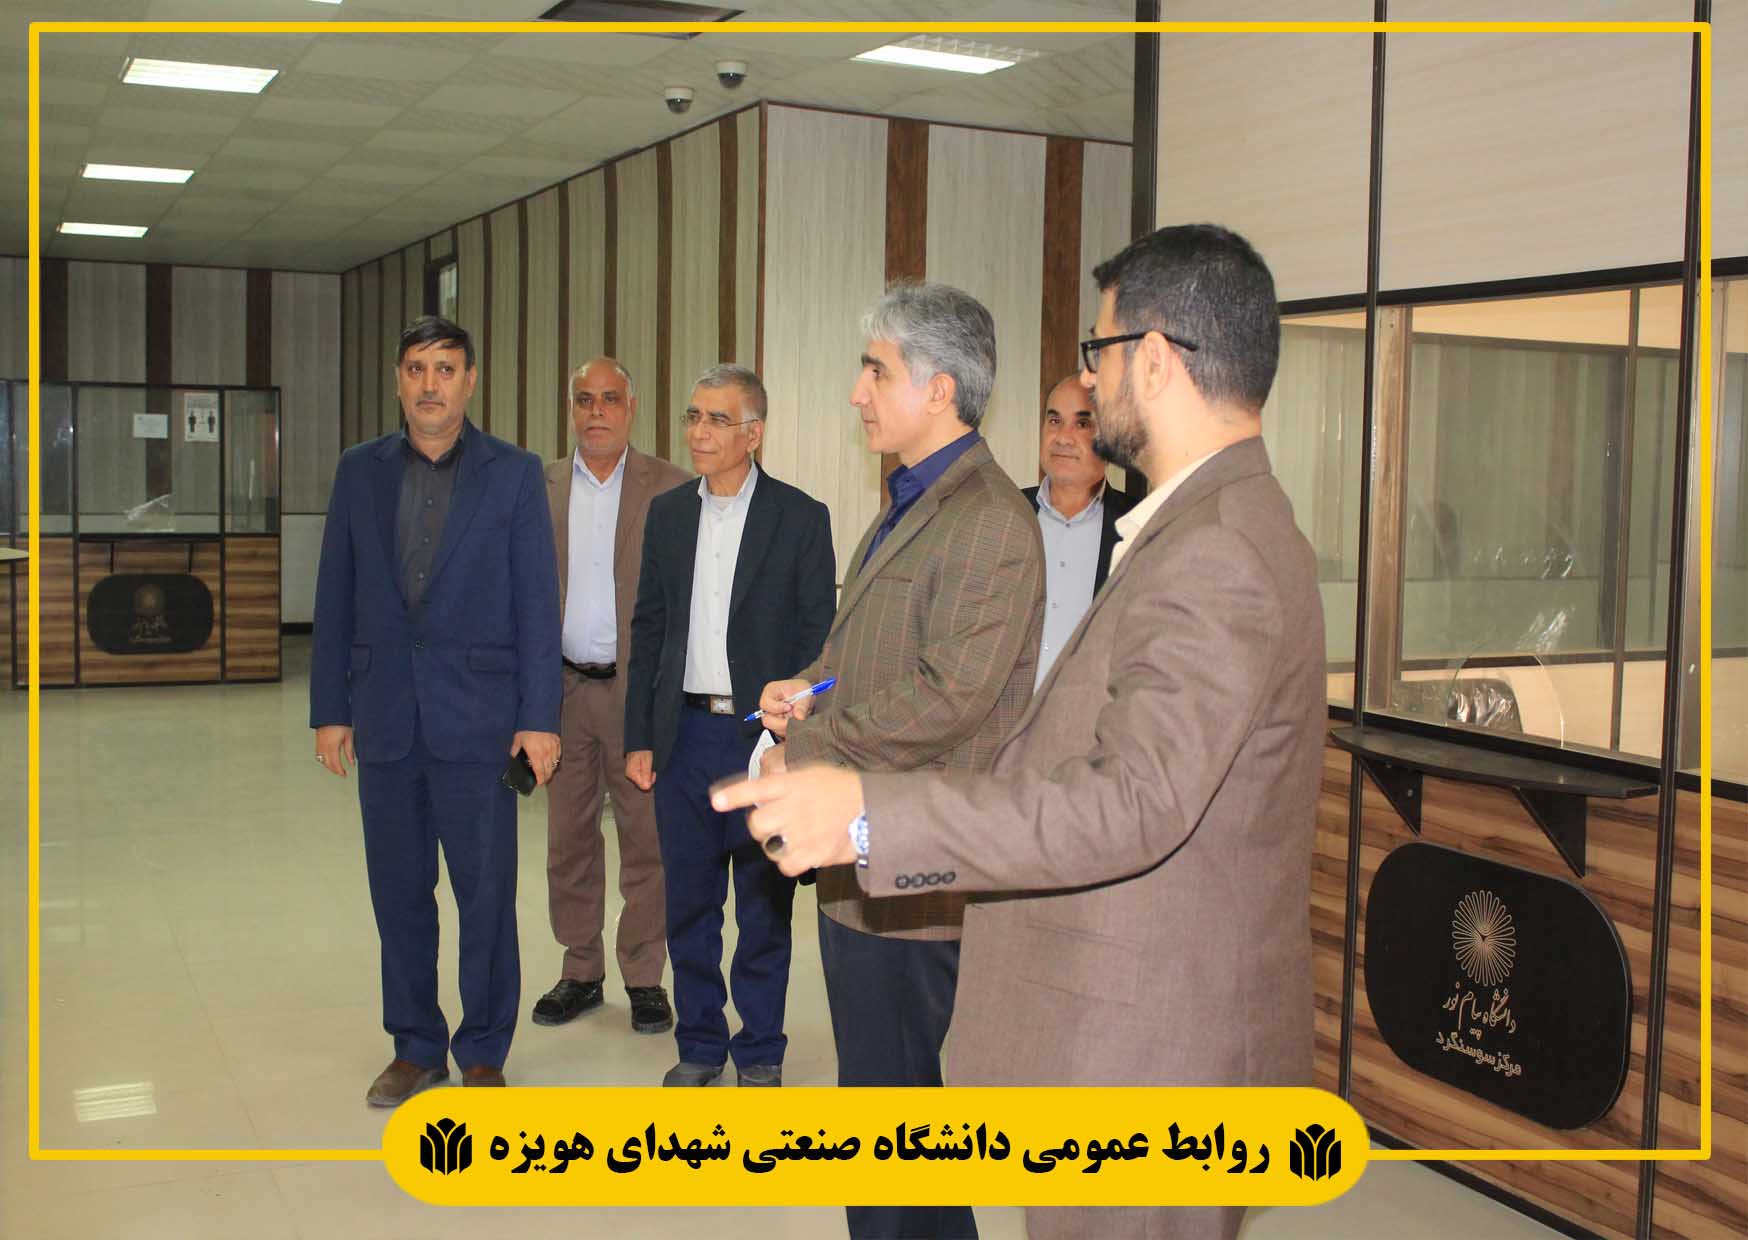 بازدید هیئت نظارت، ارزیابی و تضمین کیفیت آموزش عالی استان خوزستان از دانشگاه پیام نور